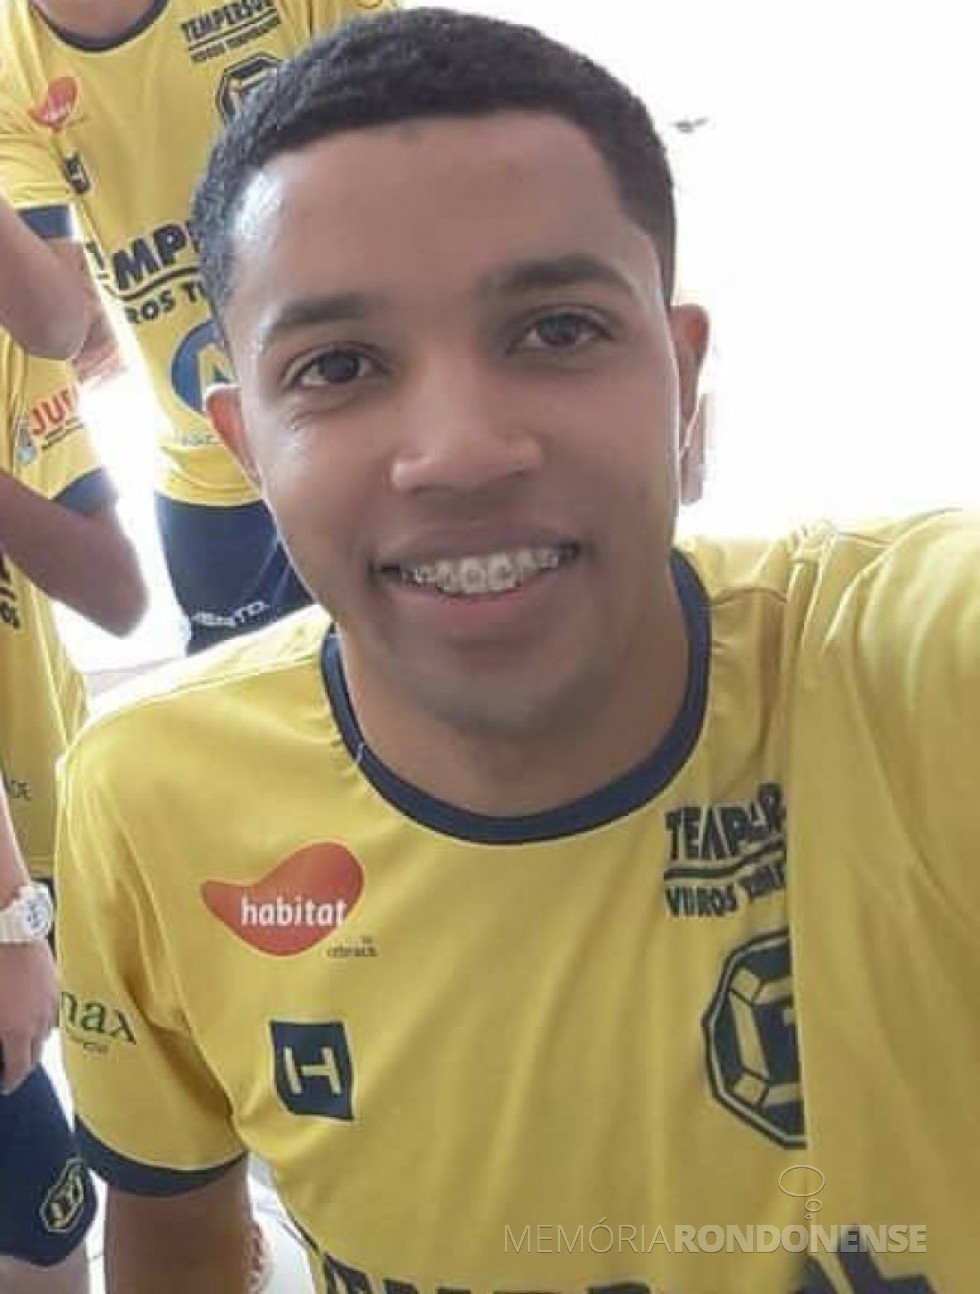  Pivô Rick (Cleiton Henrique Aparecido Ferreira Alves) contratado pela Copagril Futsal, em 19 de junho de 2017. 
Imagem: Acervo AquiAgora.net - FOTO 13 - 